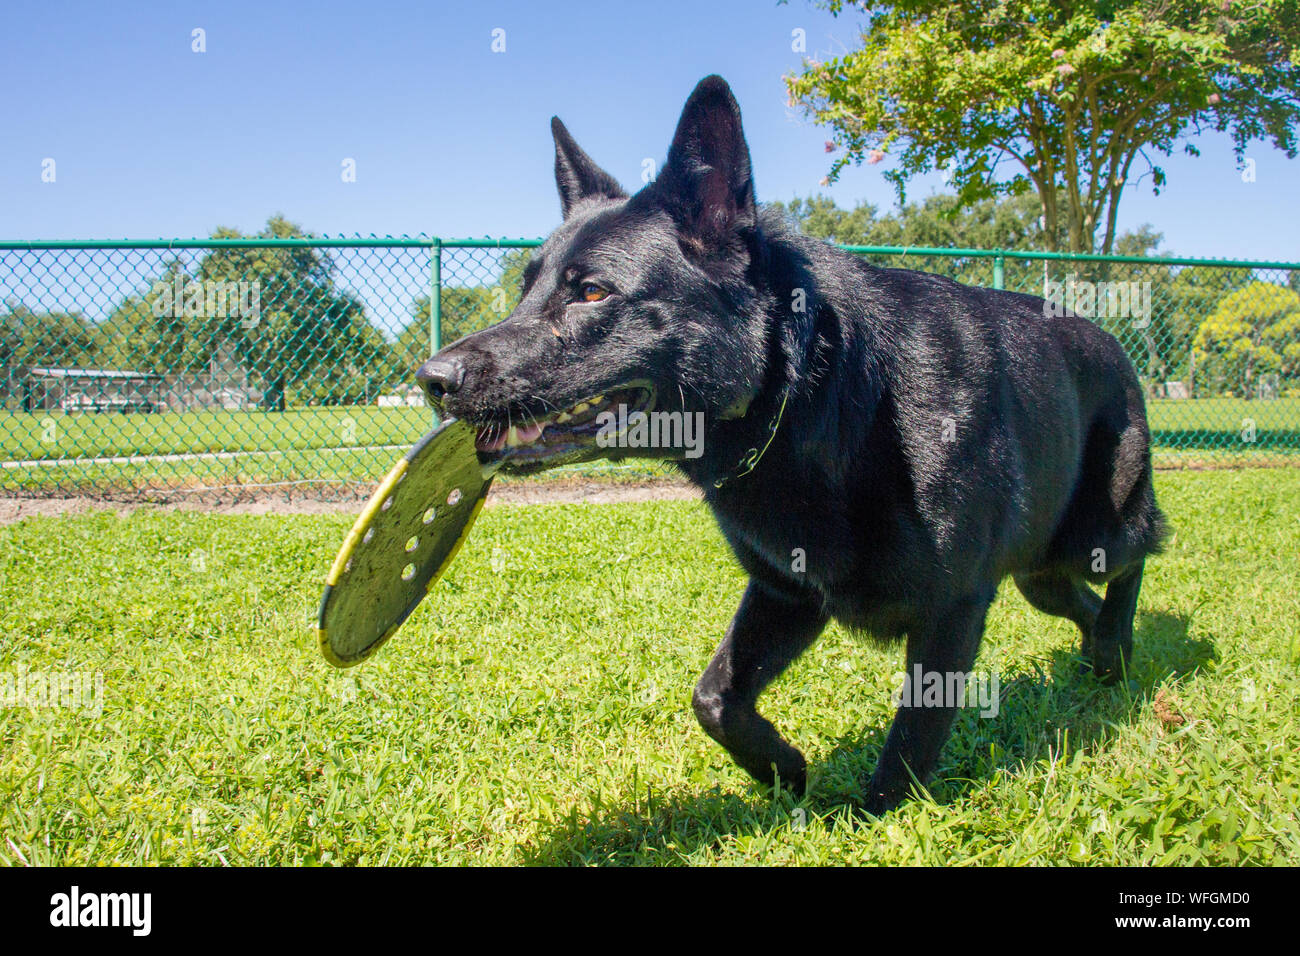 Pastore Tedesco cane portando un frisbee nella sua bocca, Stati Uniti Foto Stock